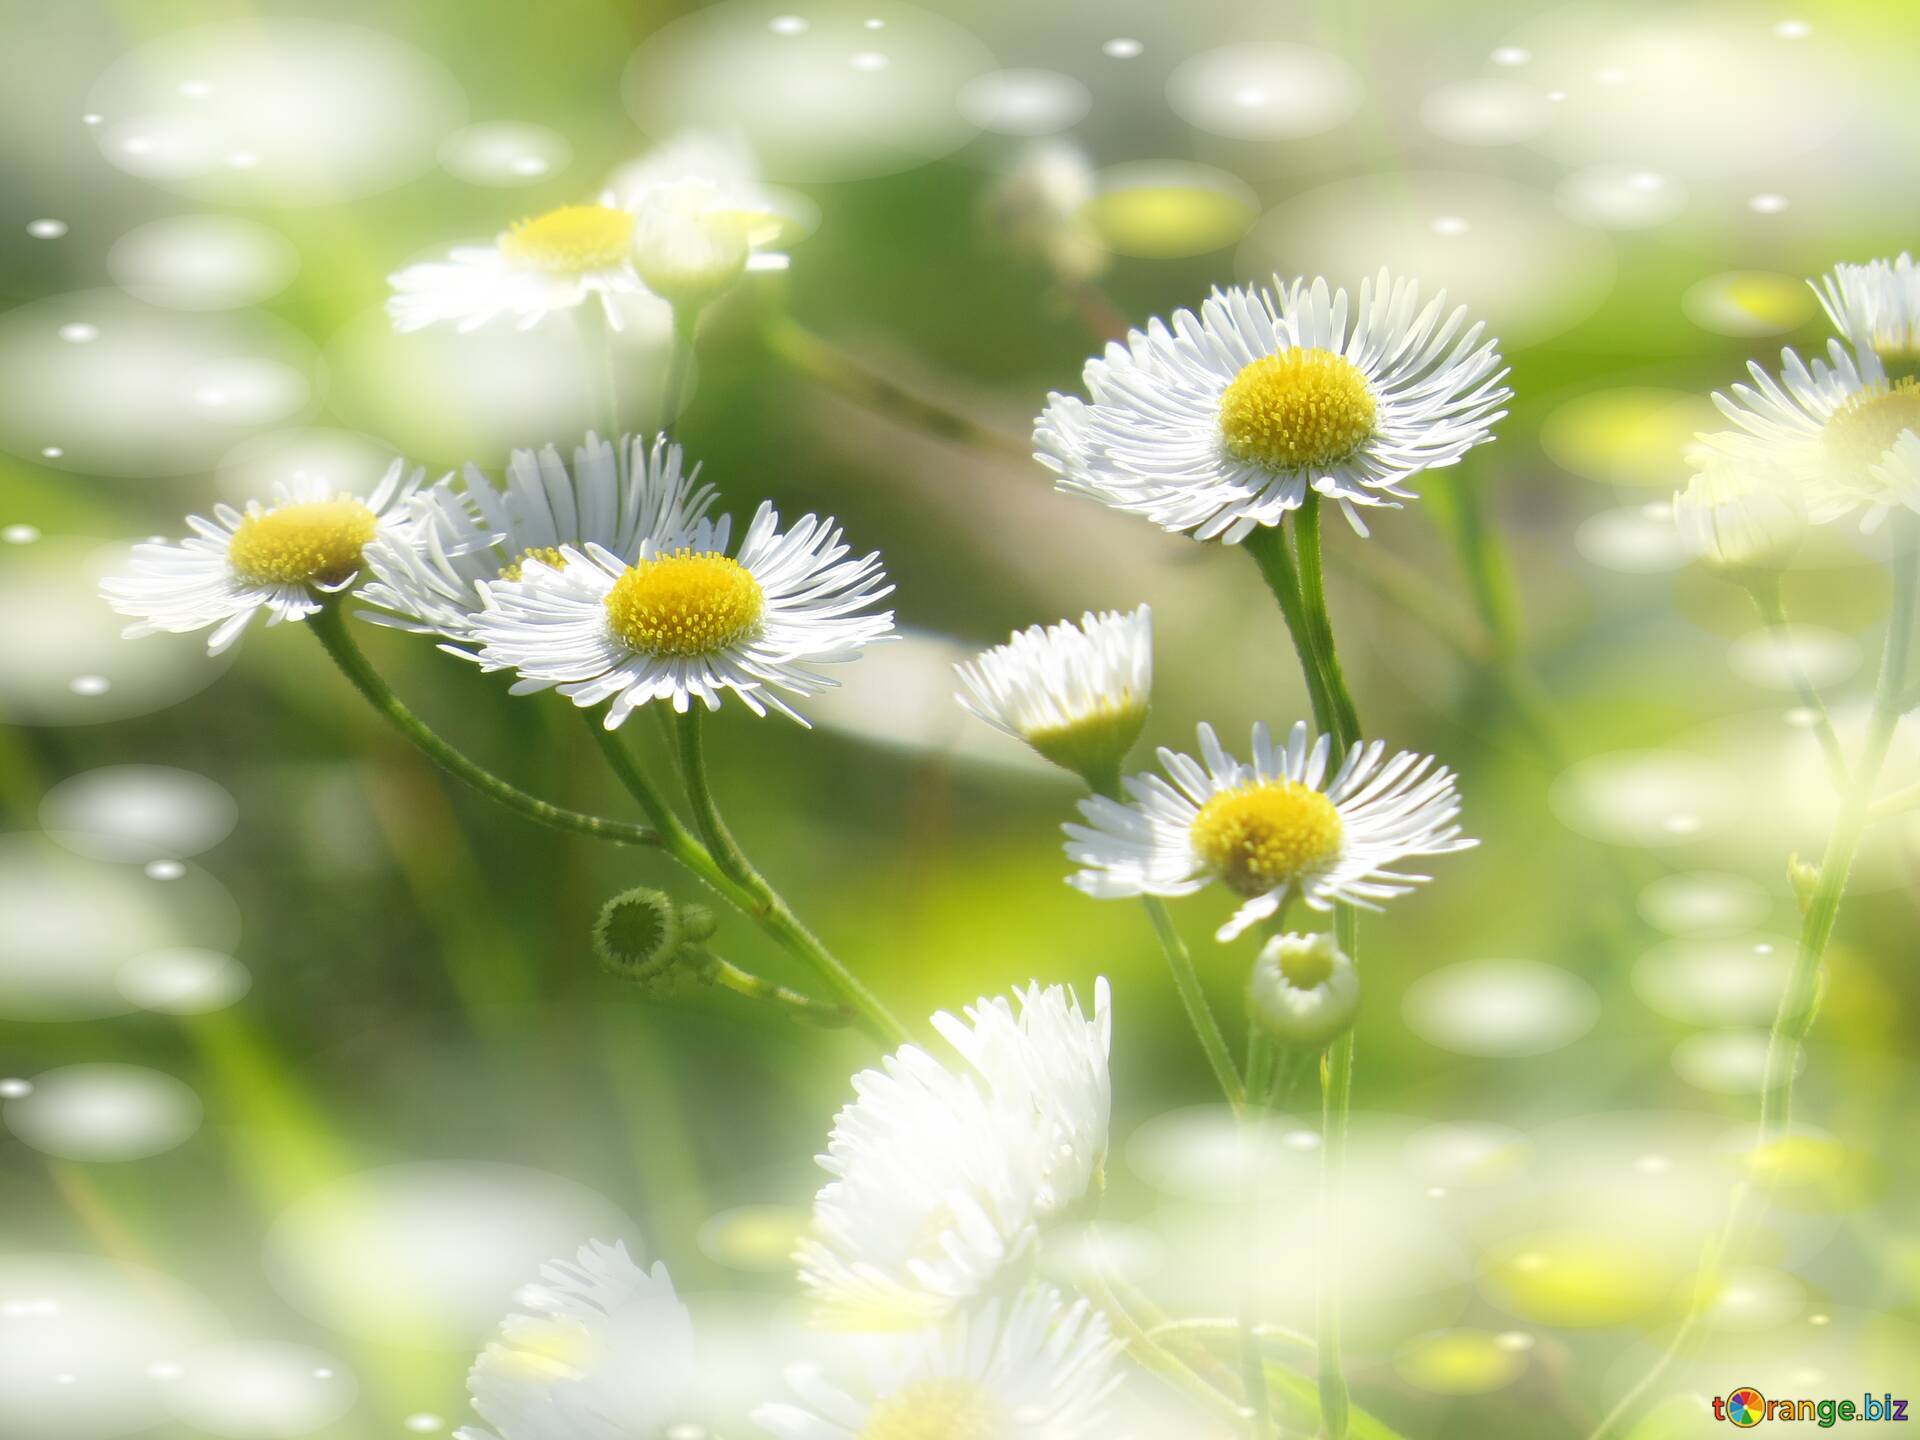 Nền nhoè hoa cúc trắng: Hãy cùng chiêm ngưỡng bức hình hoa cúc trắng tràn đầy năng lượng và sự tươi mới. Với nền xanh mướt tươi tắn, bức hình này thực sự là một sự lựa chọn tuyệt vời để thư giãn và tận hưởng cảm giác yên bình.